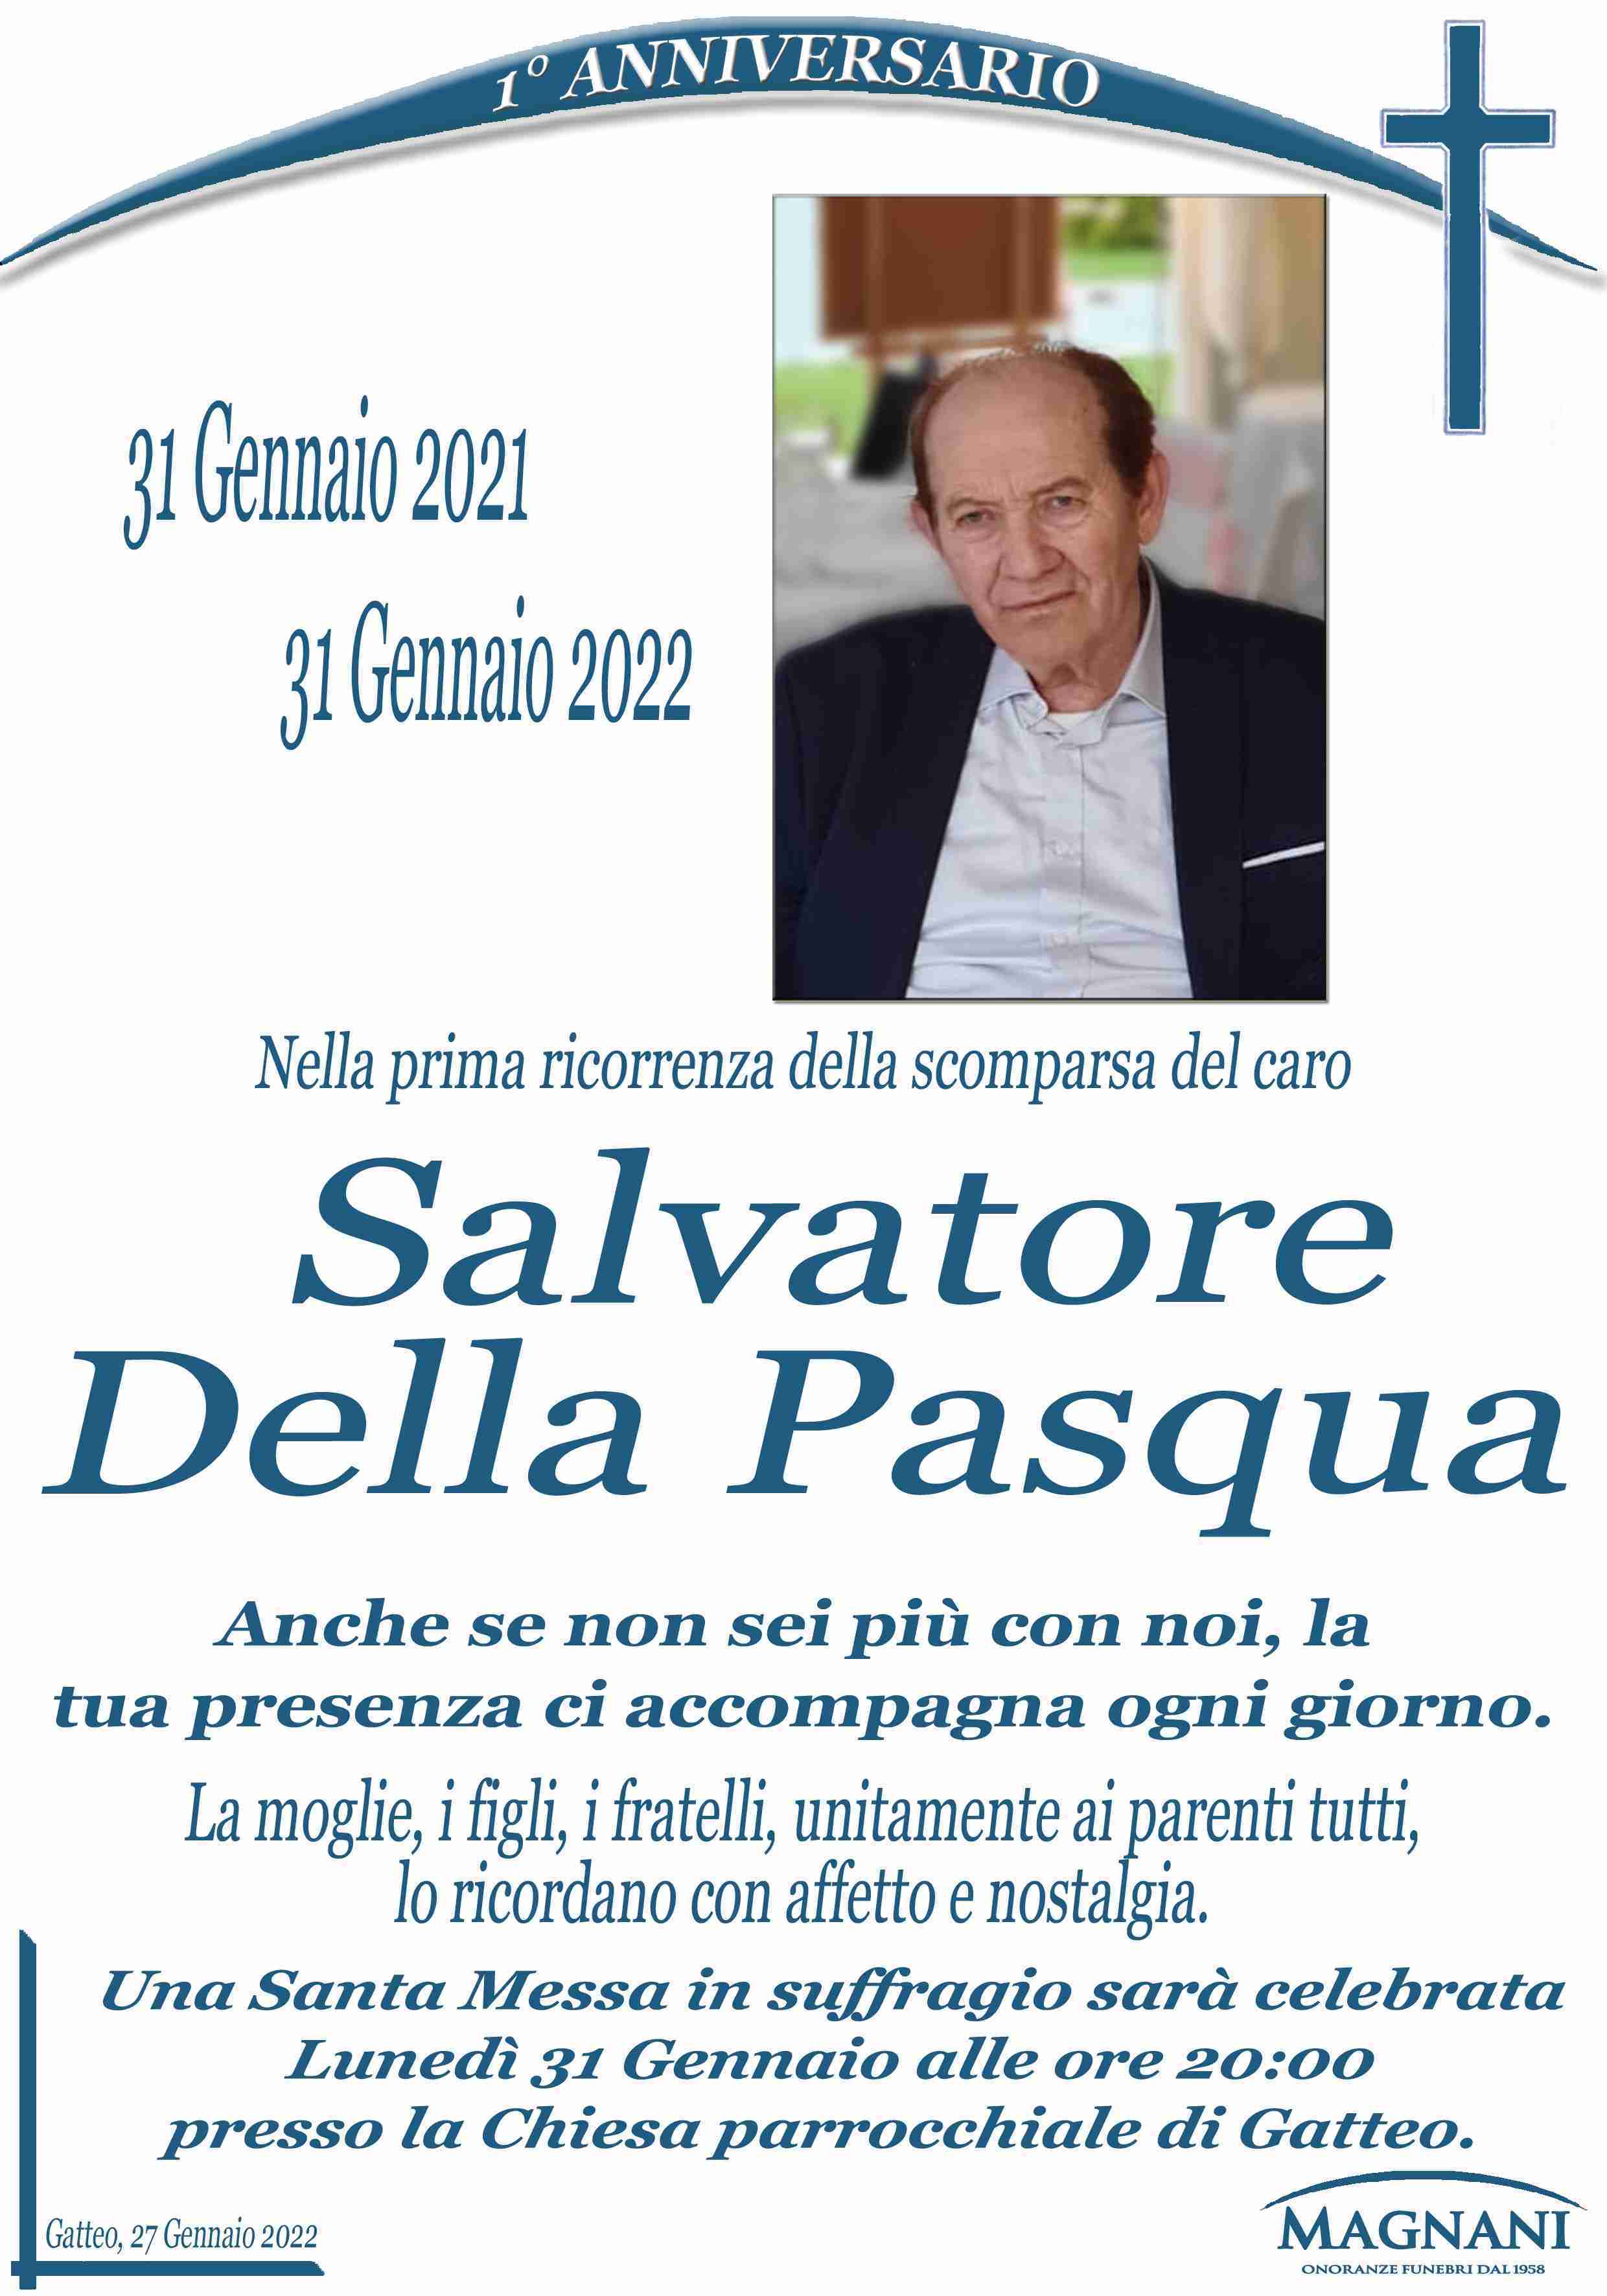 Salvatore Della Pasqua